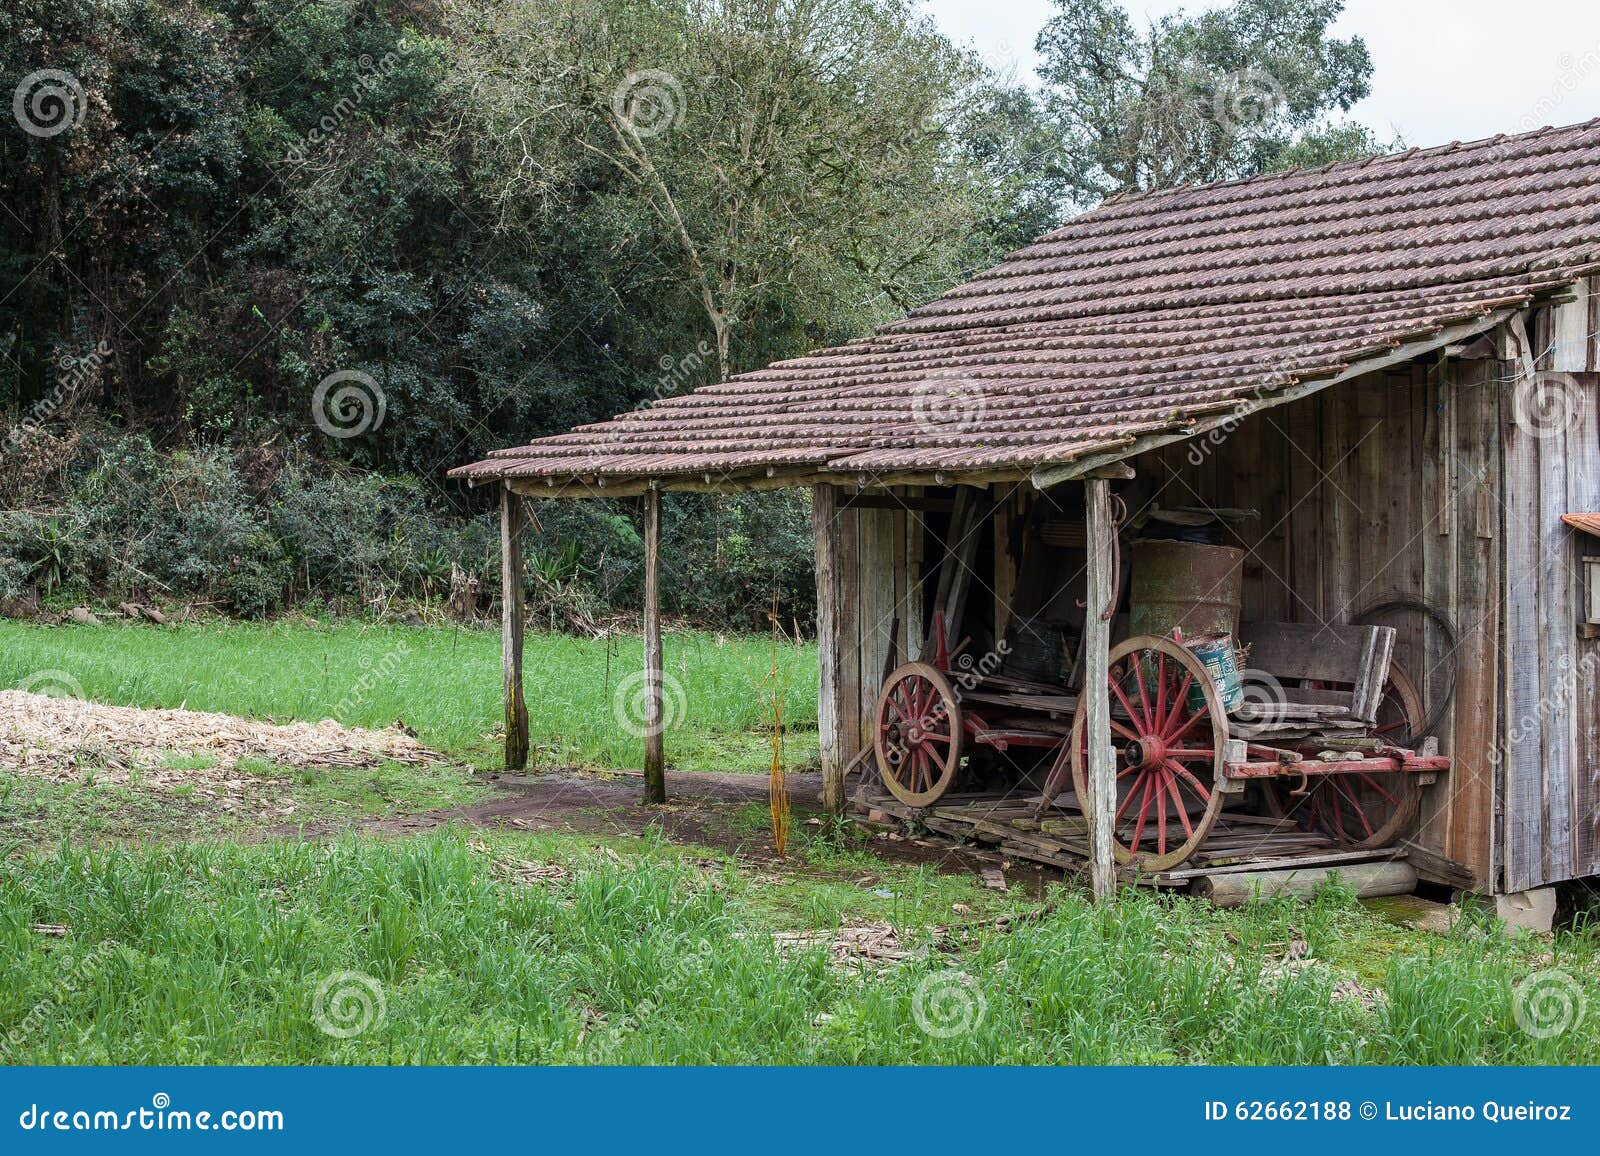 Uma Casa De Madeira Velha Em Rio Grande Do Sul Brasil Foto De Stock Imagem De Rustic Home 62662188